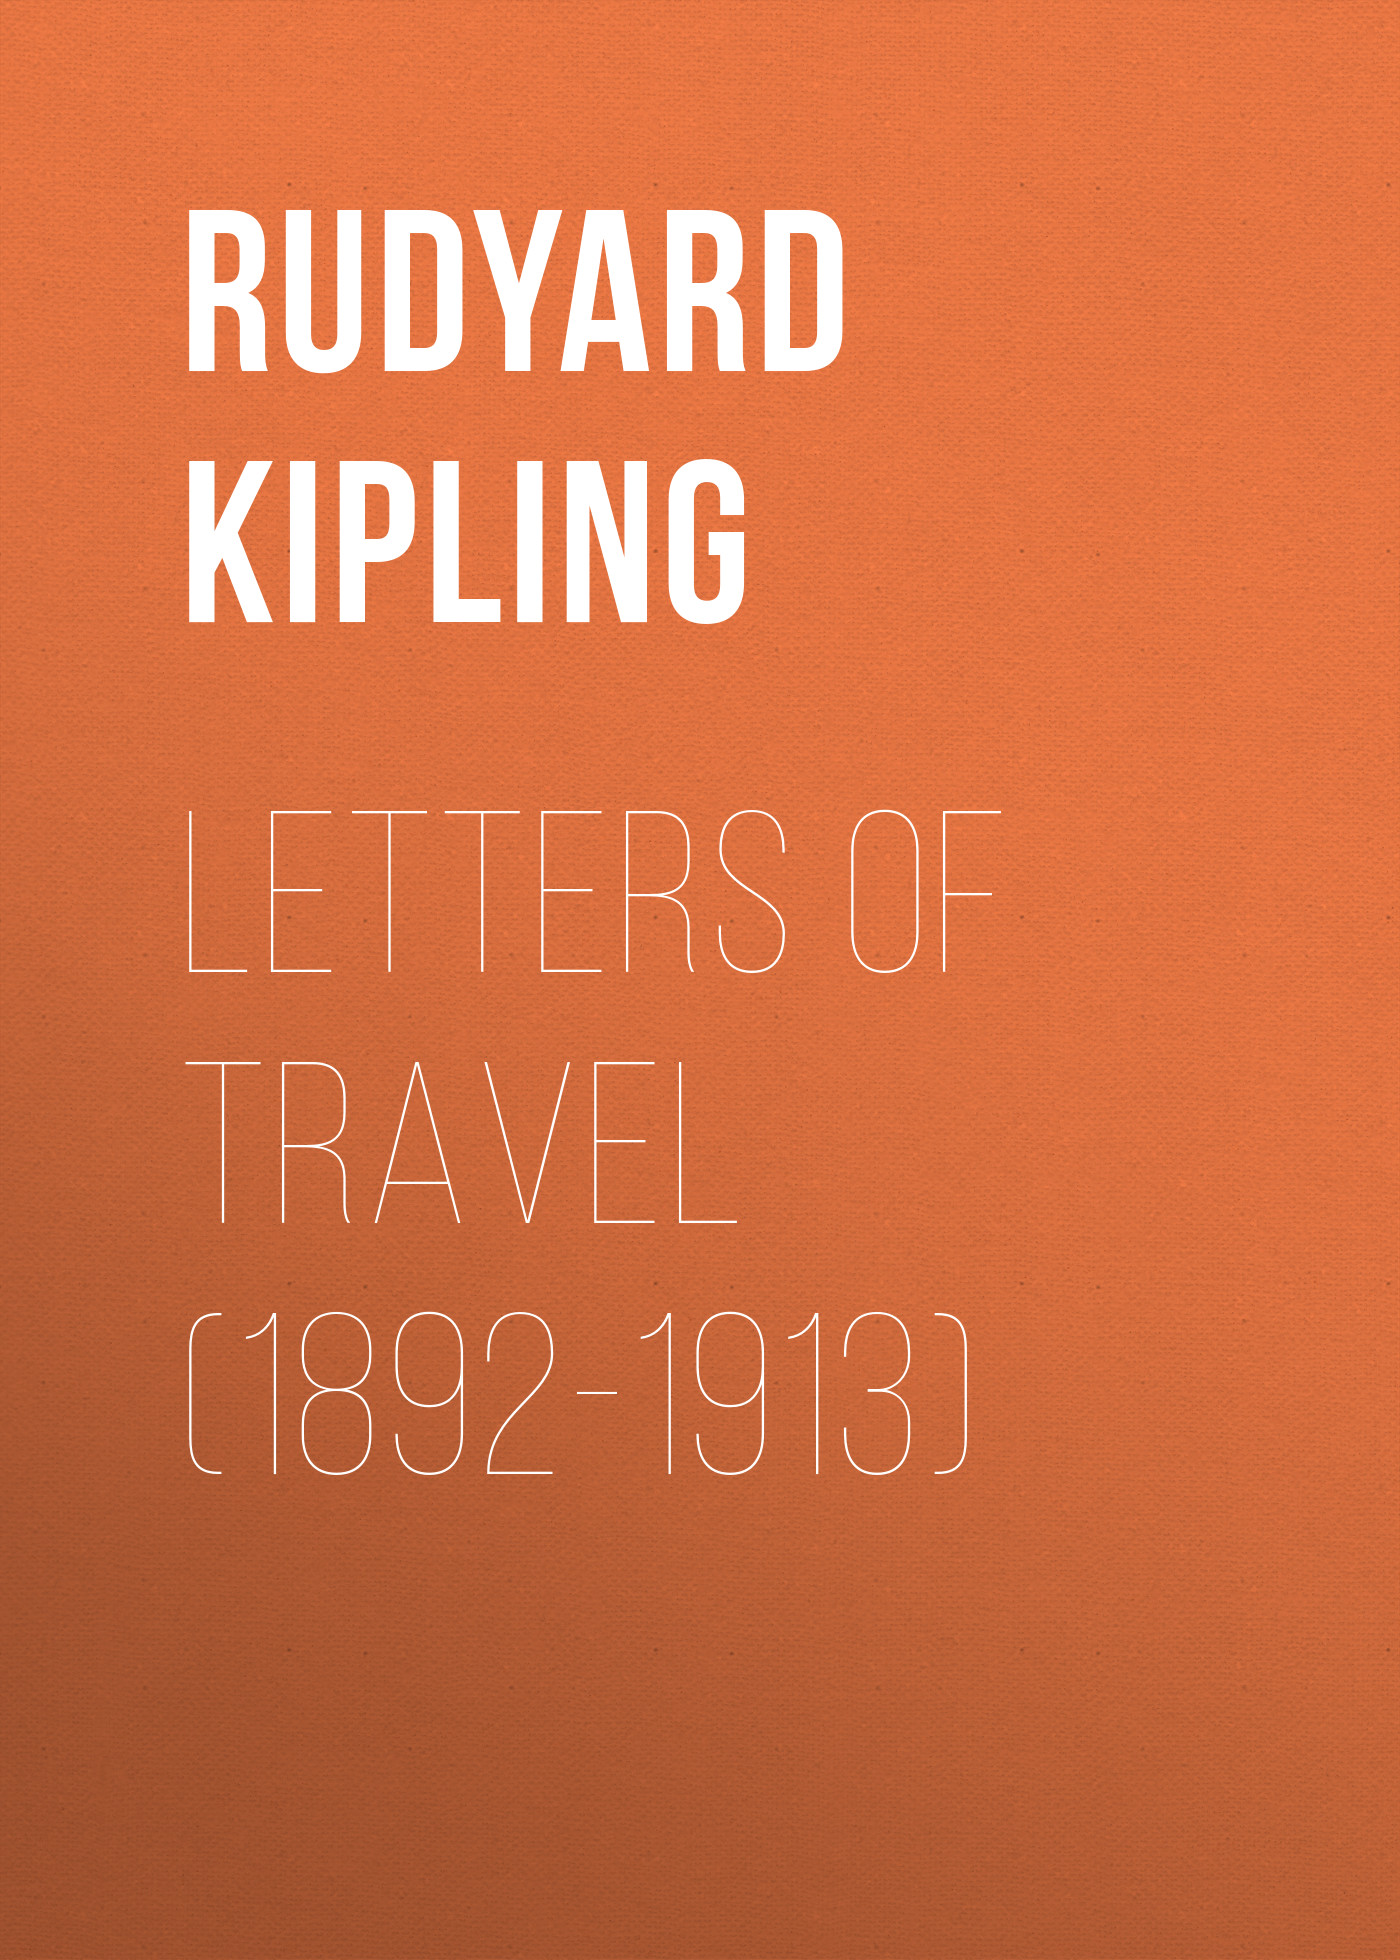 Книга Letters of Travel (1892-1913) из серии , созданная Rudyard Kipling, может относится к жанру Зарубежная старинная литература, Зарубежная классика, Иностранные языки. Стоимость электронной книги Letters of Travel (1892-1913) с идентификатором 25228604 составляет 0 руб.